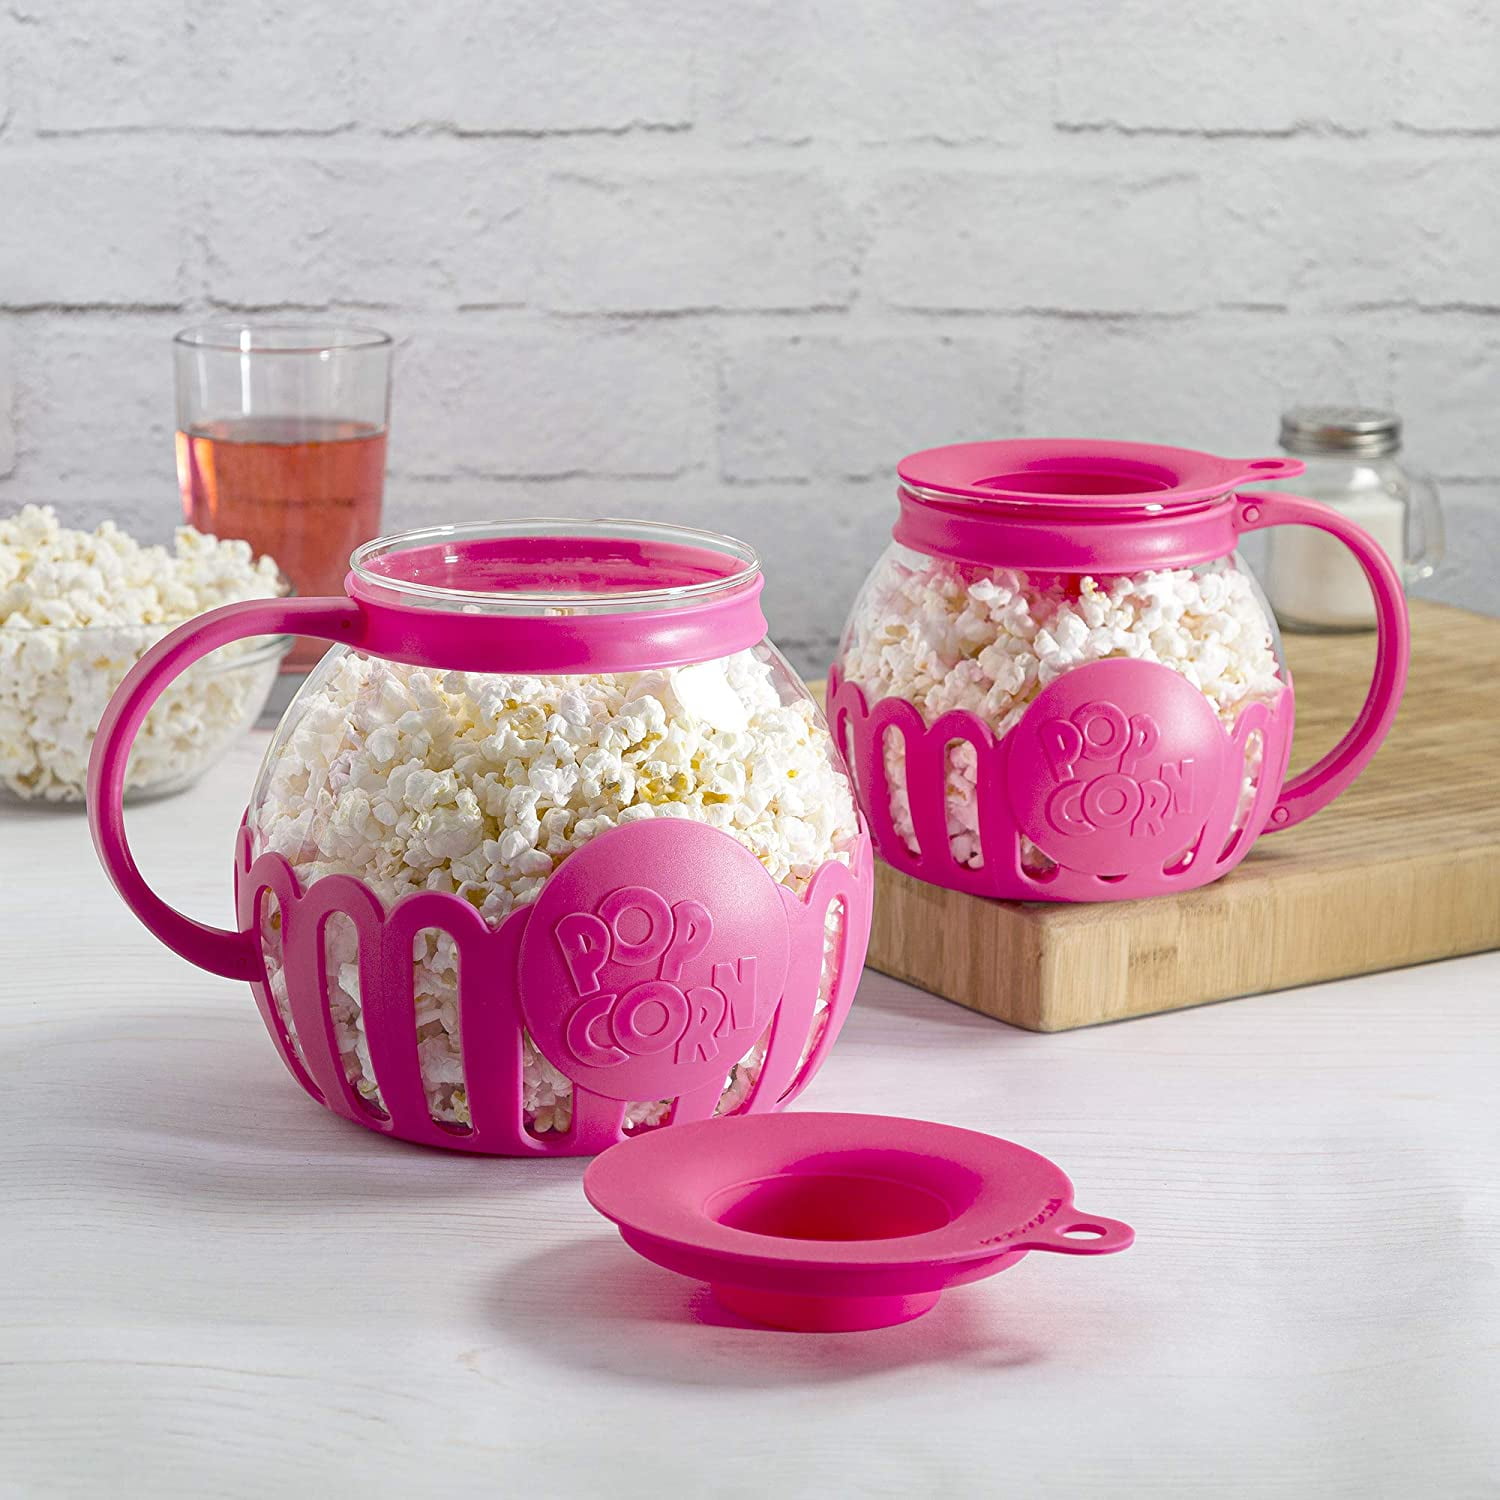 Ecolution (2 Pack) Popcorn Maker Glass Microwave Popcorn Popper